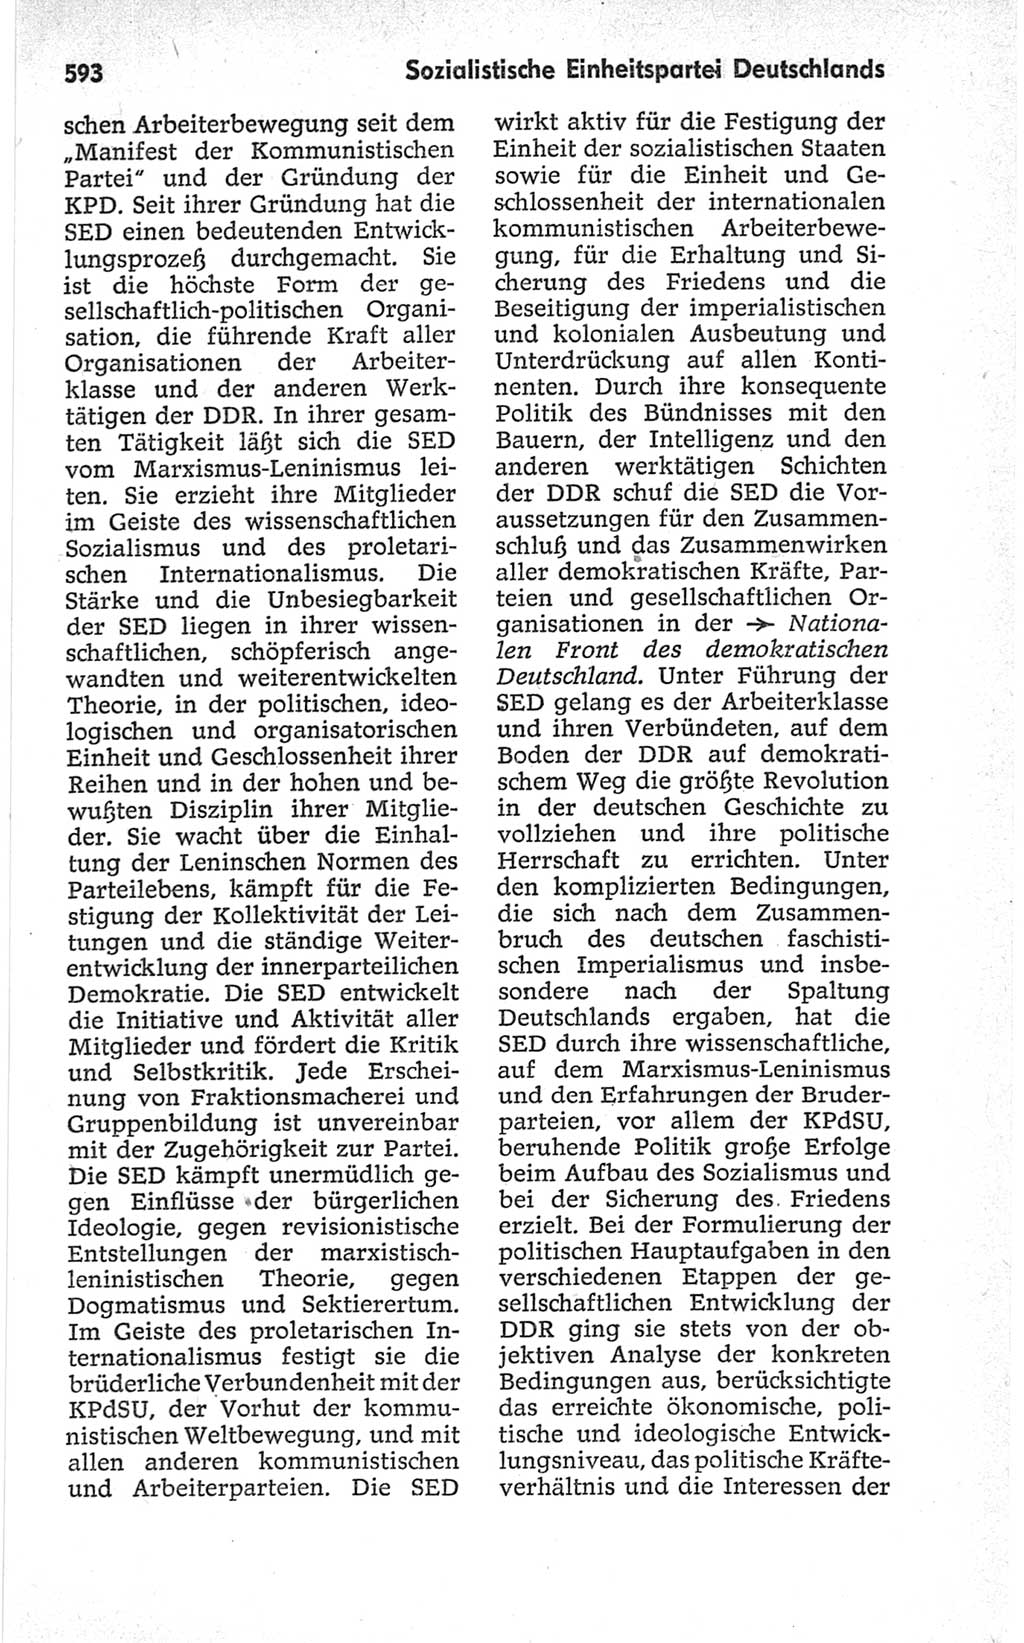 Kleines politisches Wörterbuch [Deutsche Demokratische Republik (DDR)] 1967, Seite 593 (Kl. pol. Wb. DDR 1967, S. 593)